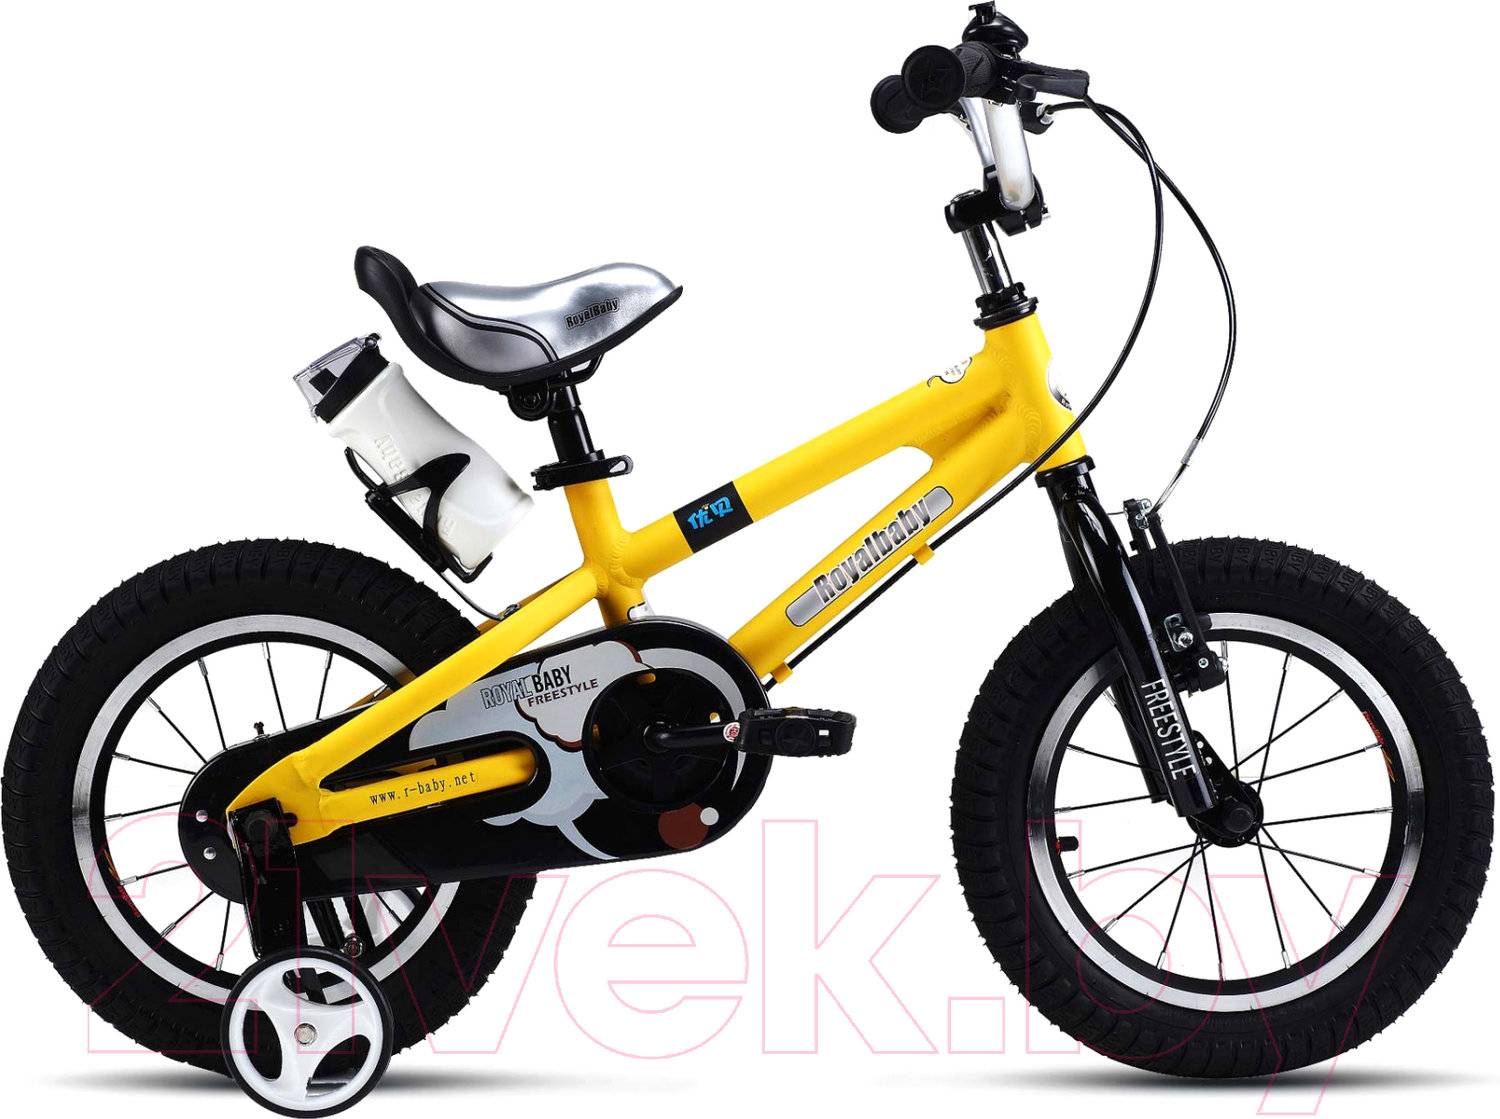 Велосипед купить детский 7 лет мальчику. Royal Baby Freestyle 18 Alloy. Детский велосипед Royal Baby rb18b-7 Freestyle 18 Alloy. Royal Baby rb16b-7 Freestyle 16 Alloy. Велосипед Royal Baby Freestyle 12.